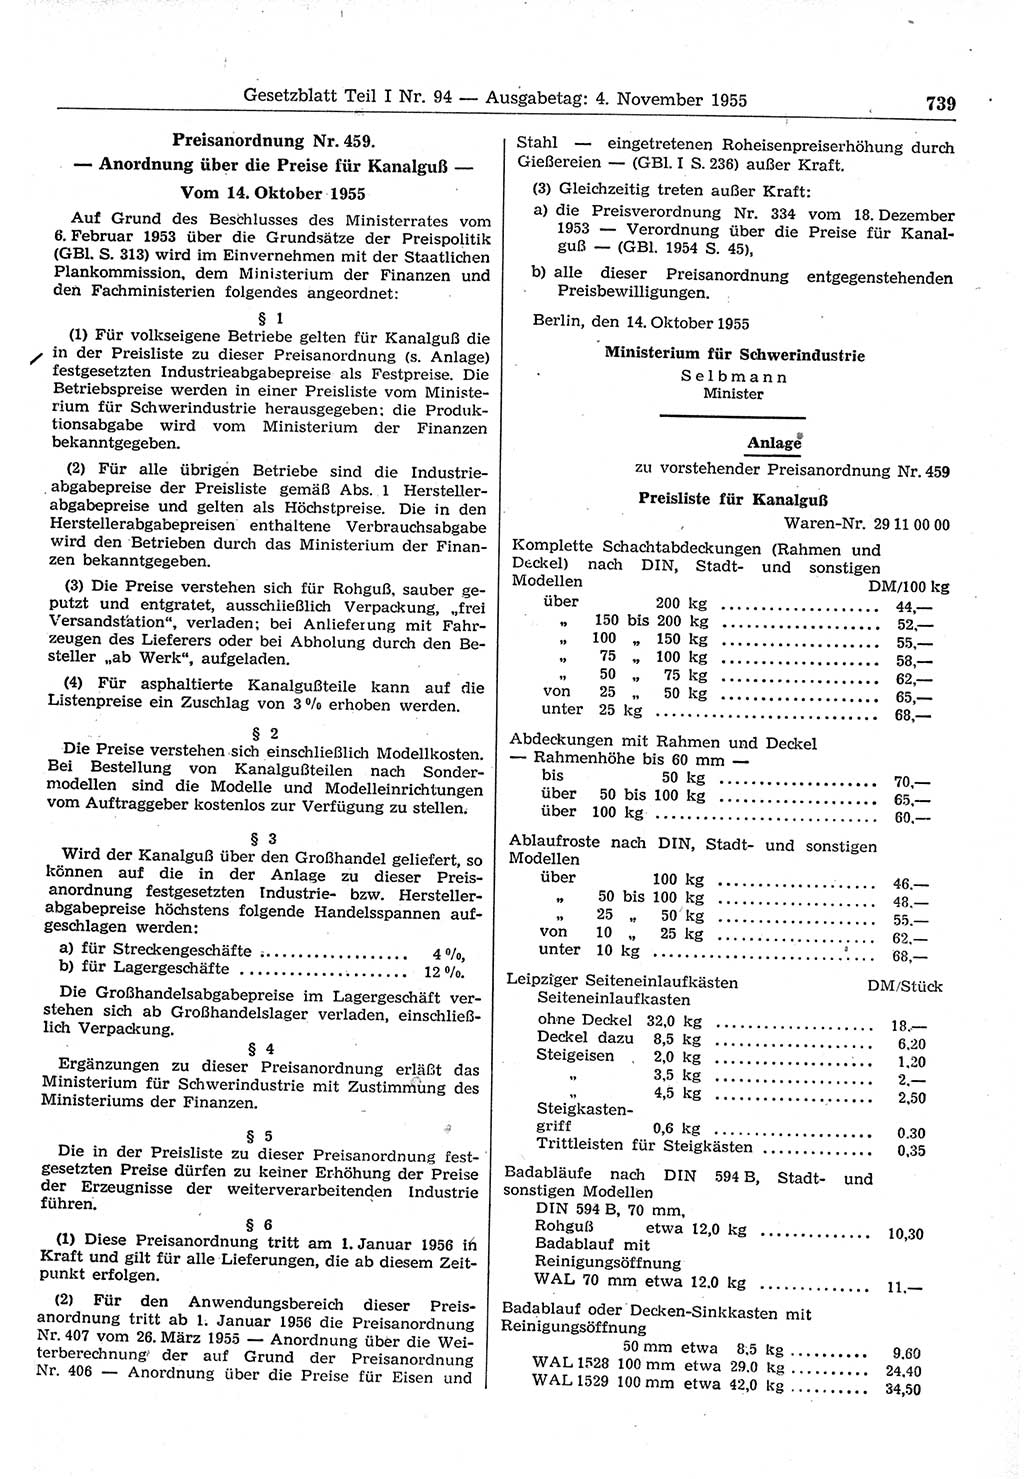 Gesetzblatt (GBl.) der Deutschen Demokratischen Republik (DDR) Teil Ⅰ 1955, Seite 739 (GBl. DDR Ⅰ 1955, S. 739)